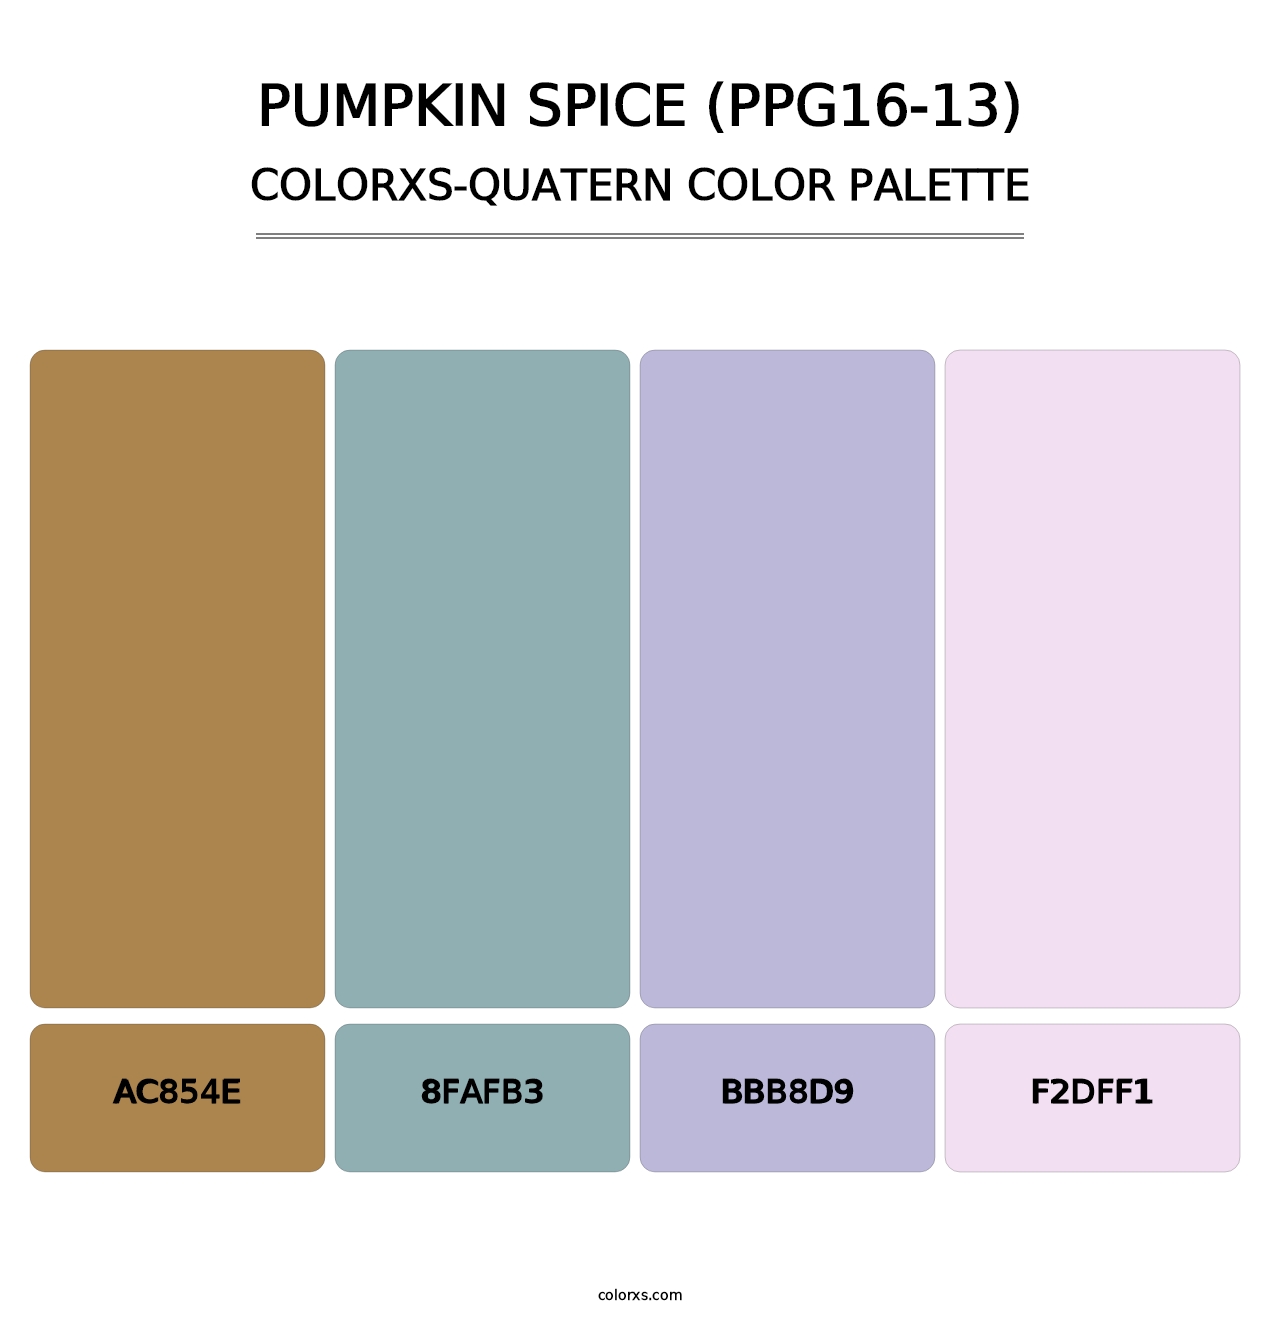 Pumpkin Spice (PPG16-13) - Colorxs Quatern Palette